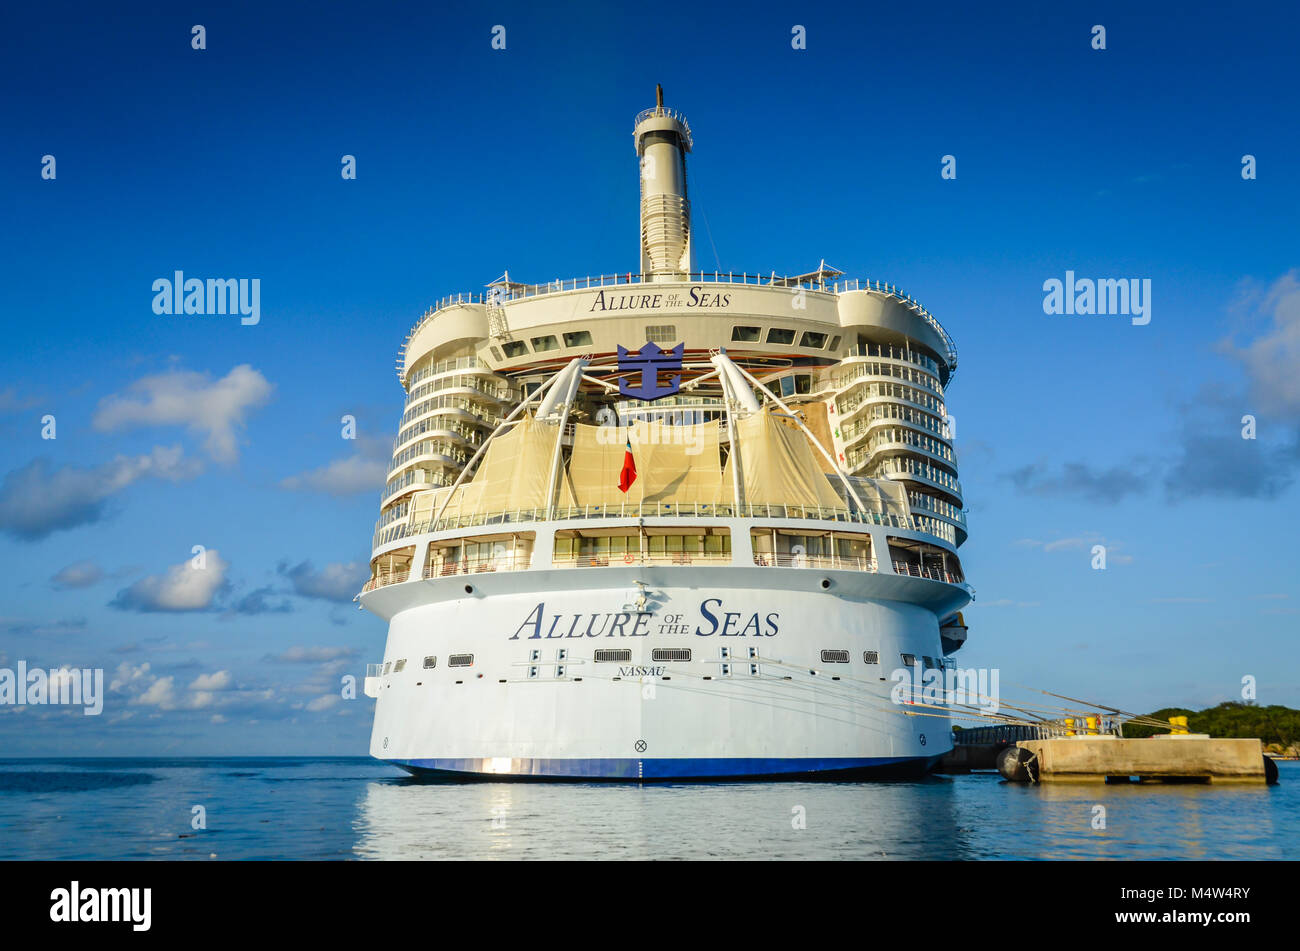 El encanto de los mares, uno de los grandes buques de crucero en el mundo, y una parte de la flota de Royal Caribbean, acoplada en Labadee, Haití. Foto de stock